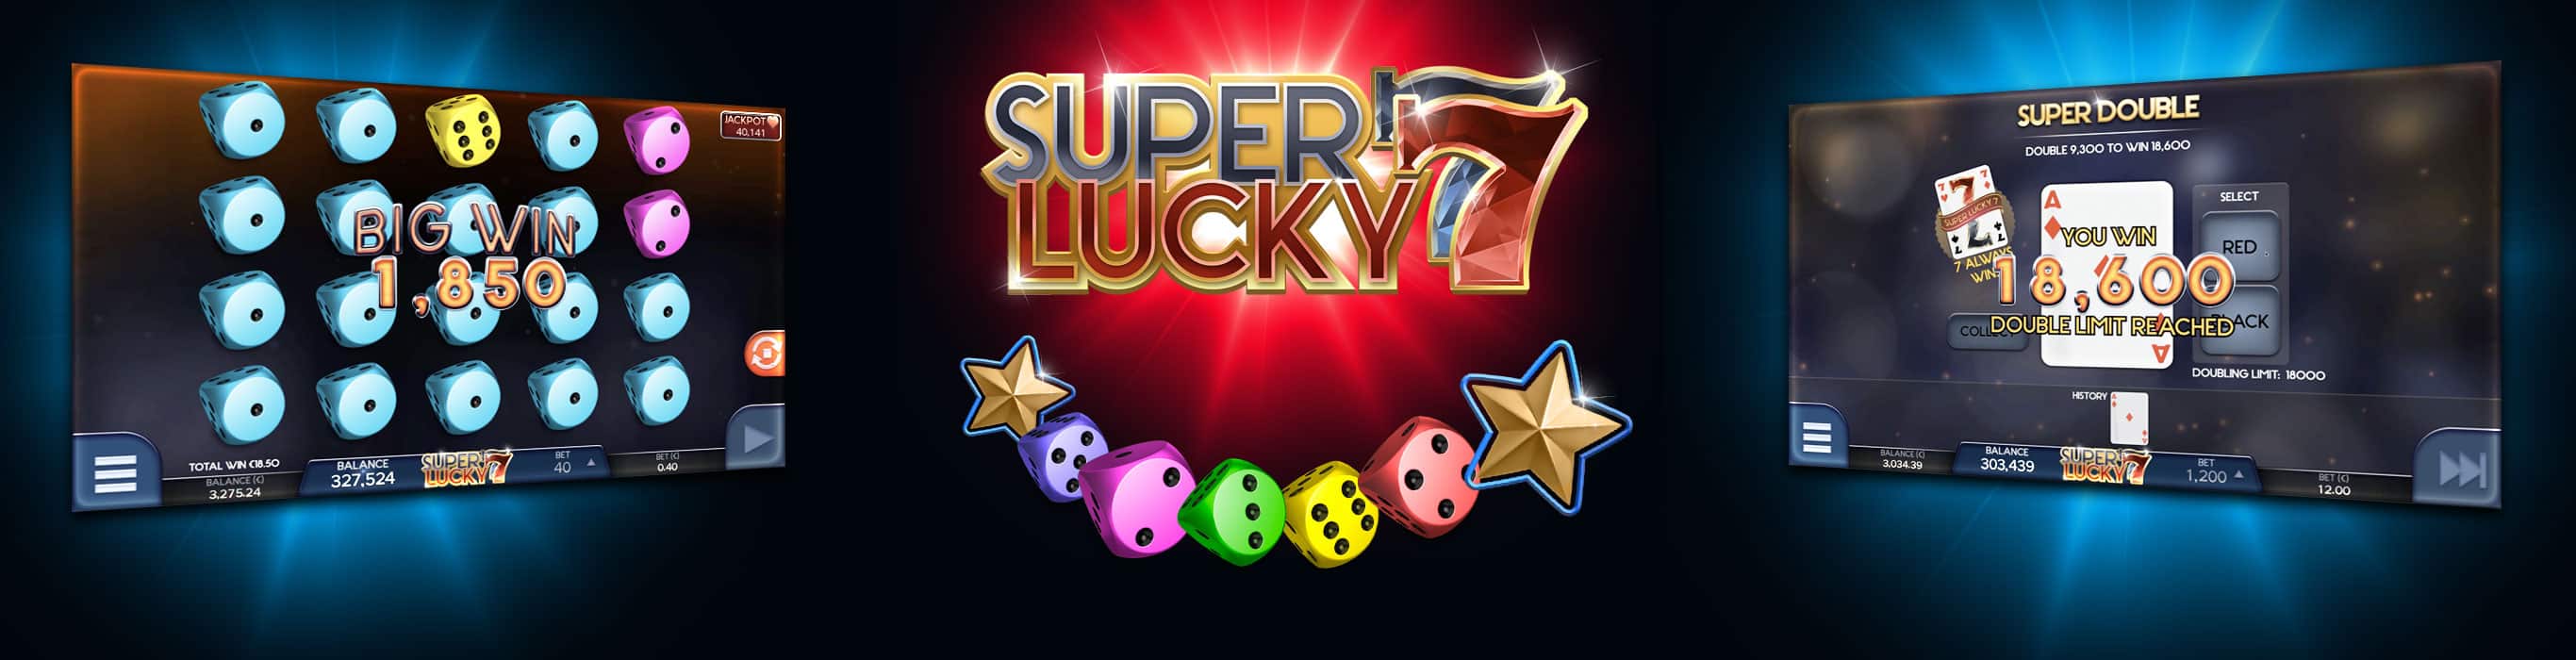 superlucky7-pg-2732x700